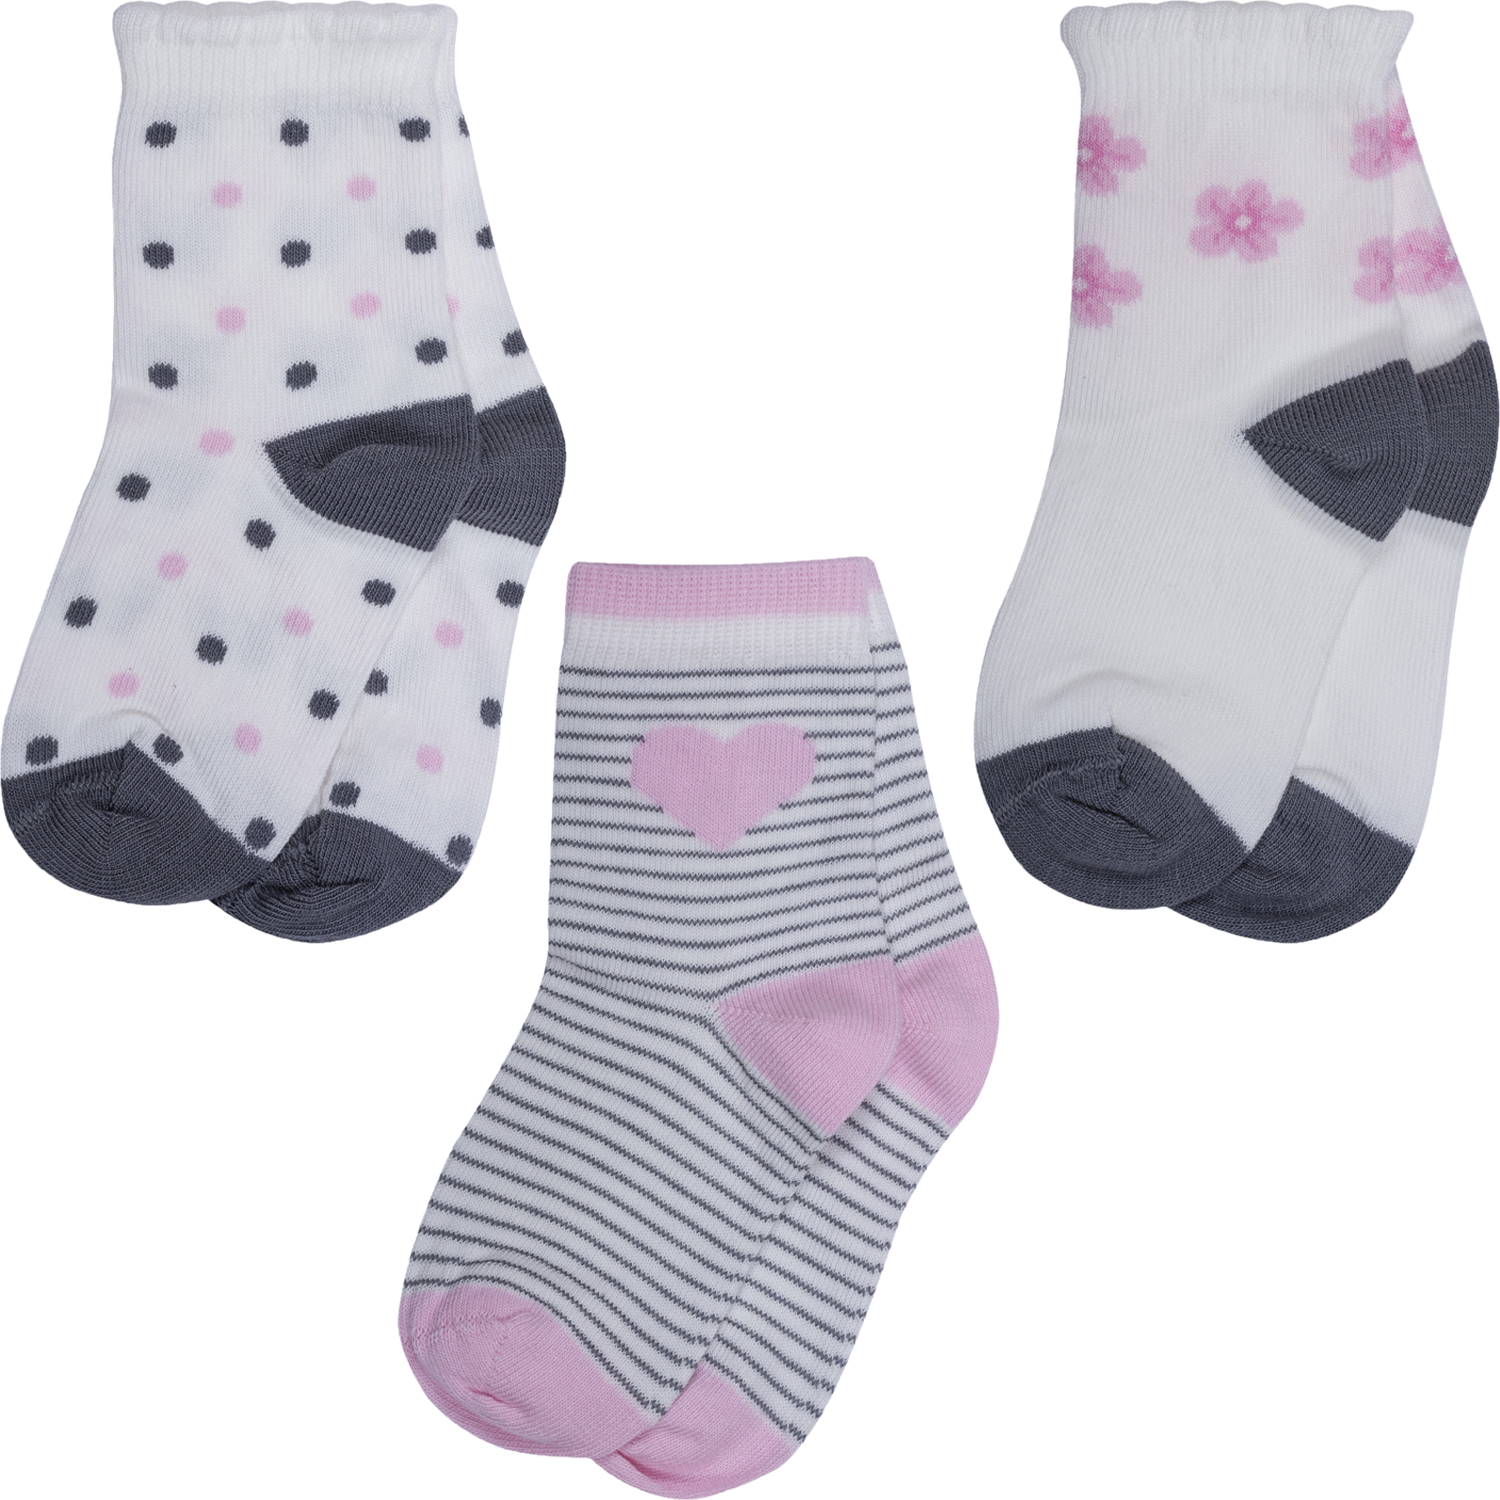 Носки для девочек Rusocks 3-Д3-13794 цв. белый; серый; розовый р. 12-14 бюстгальтер женский t shirt t shirt розовый с деталями из сетки